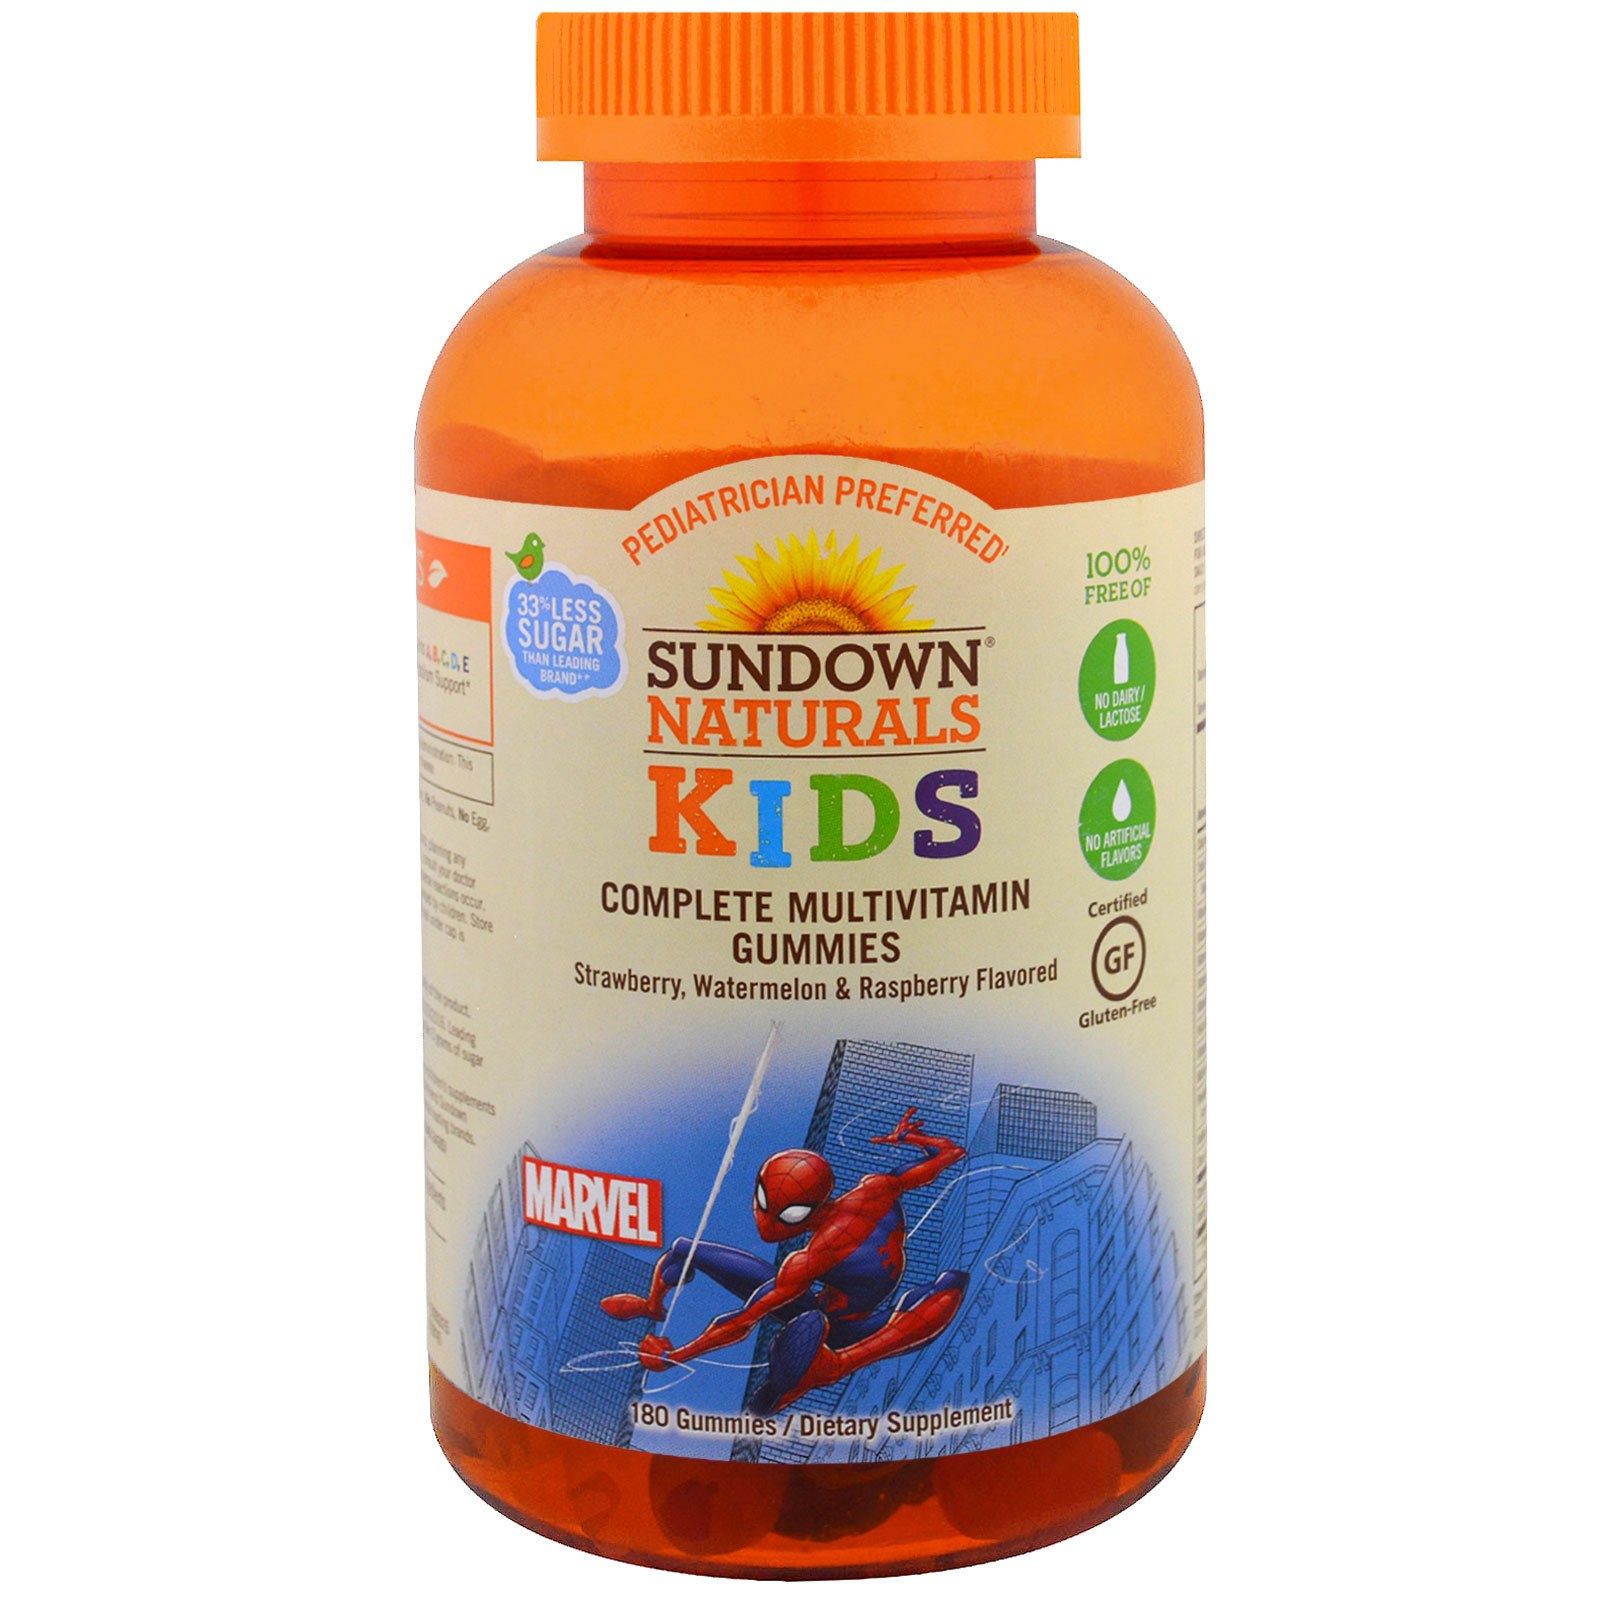 Жевательные мультивитамины для детей. Sundown Kids витамины. Sundown naturals Kids витамины Marvel. Мультивитамины для детей. Витамины мультивитамины для детей.